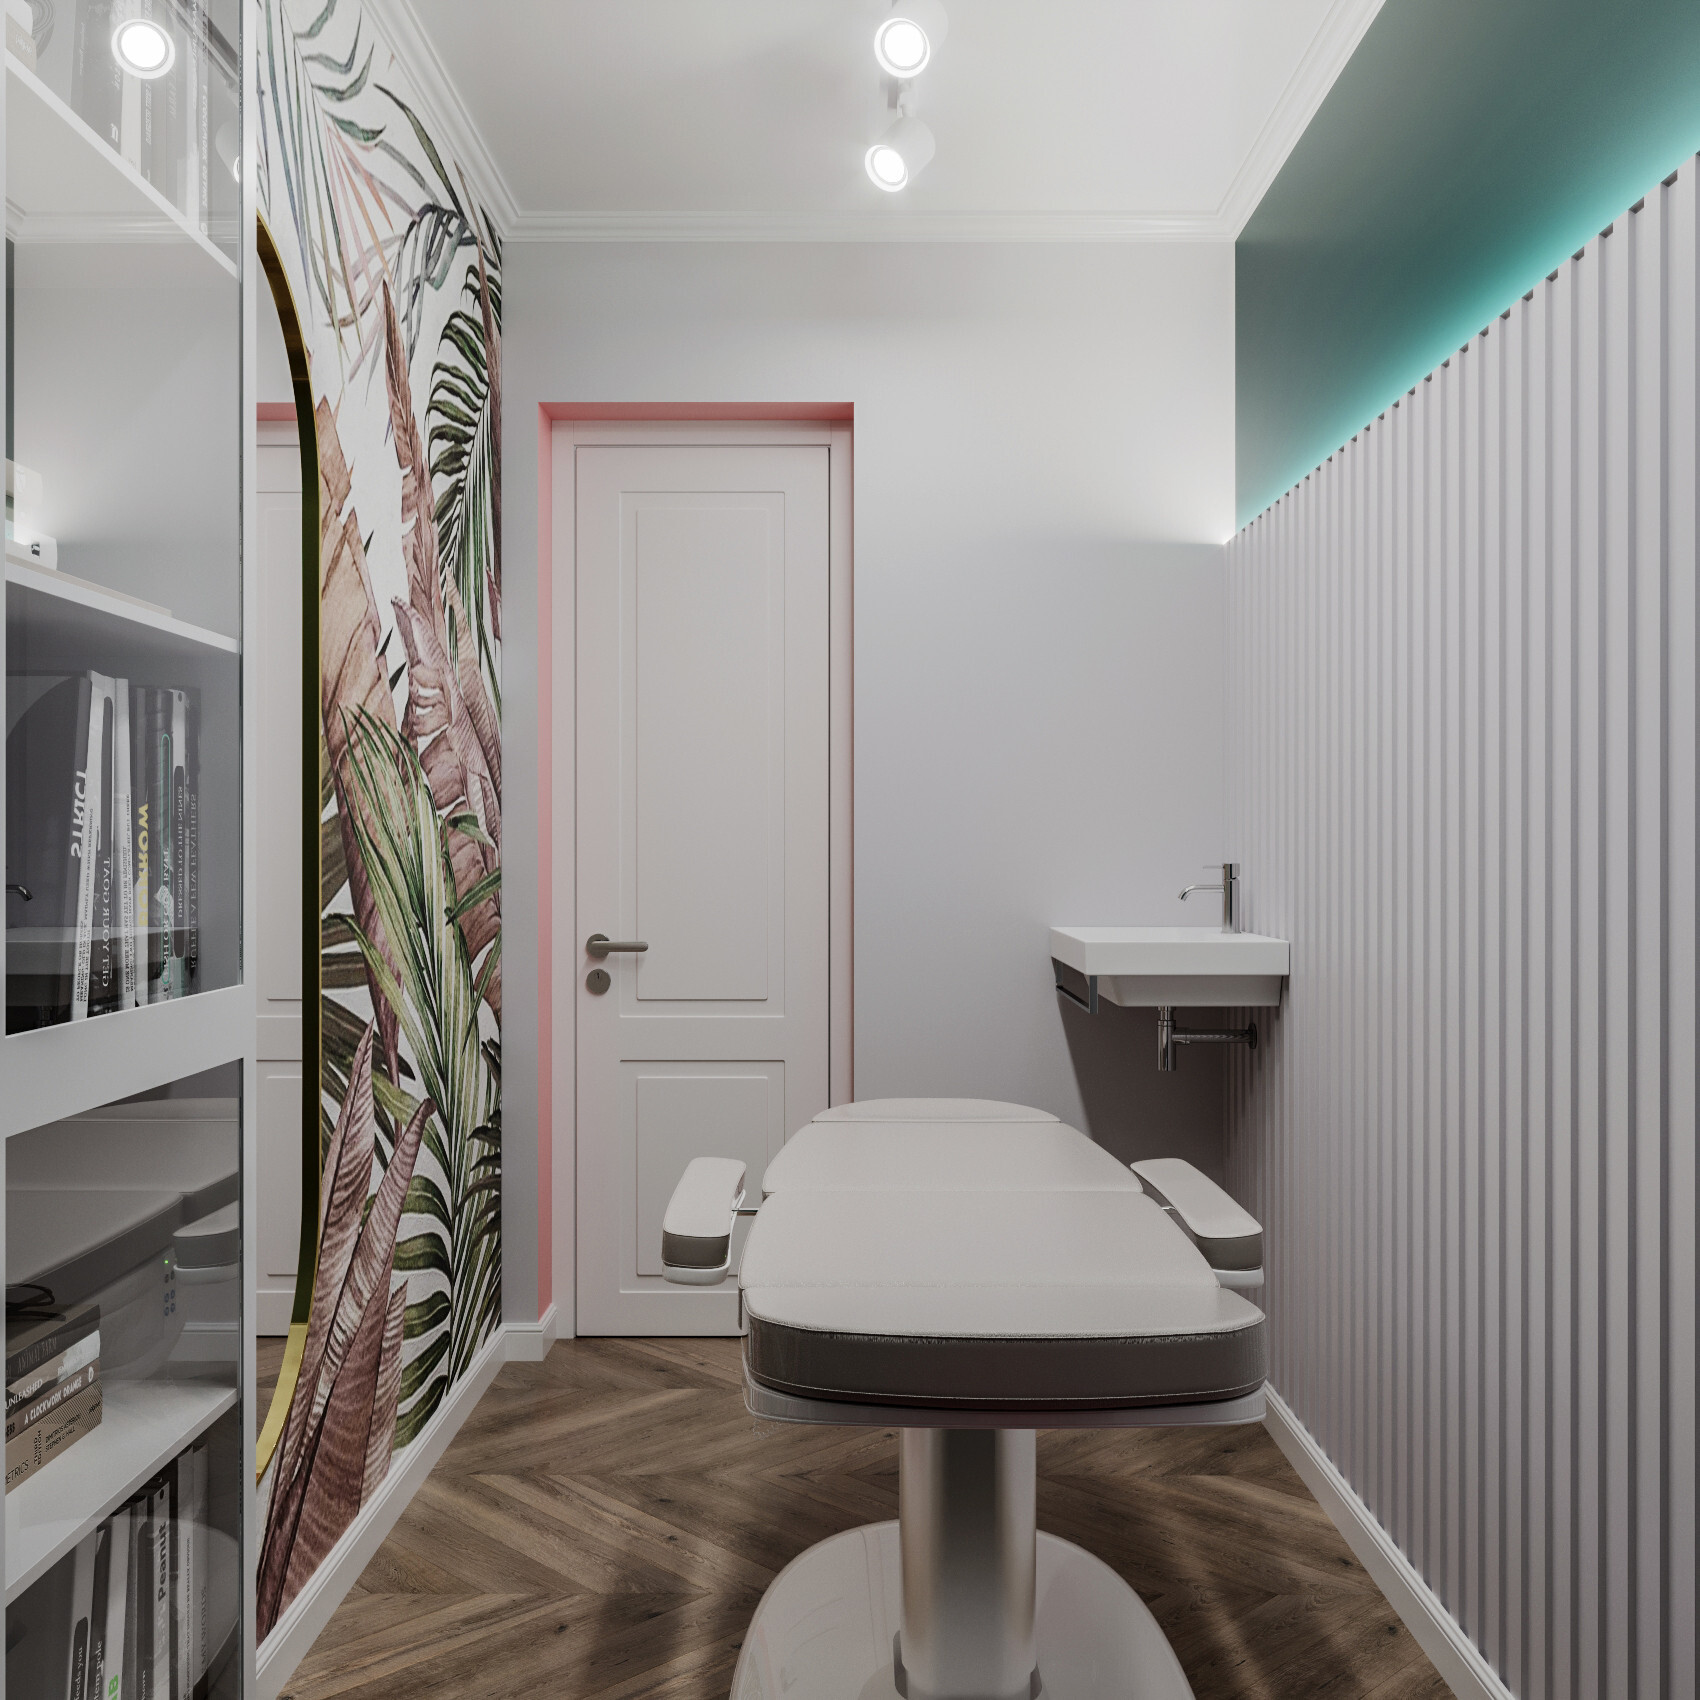 Интерьер ванной с проходной, световыми линиями, вертикальными жалюзи, рейками с подсветкой и подсветкой светодиодной